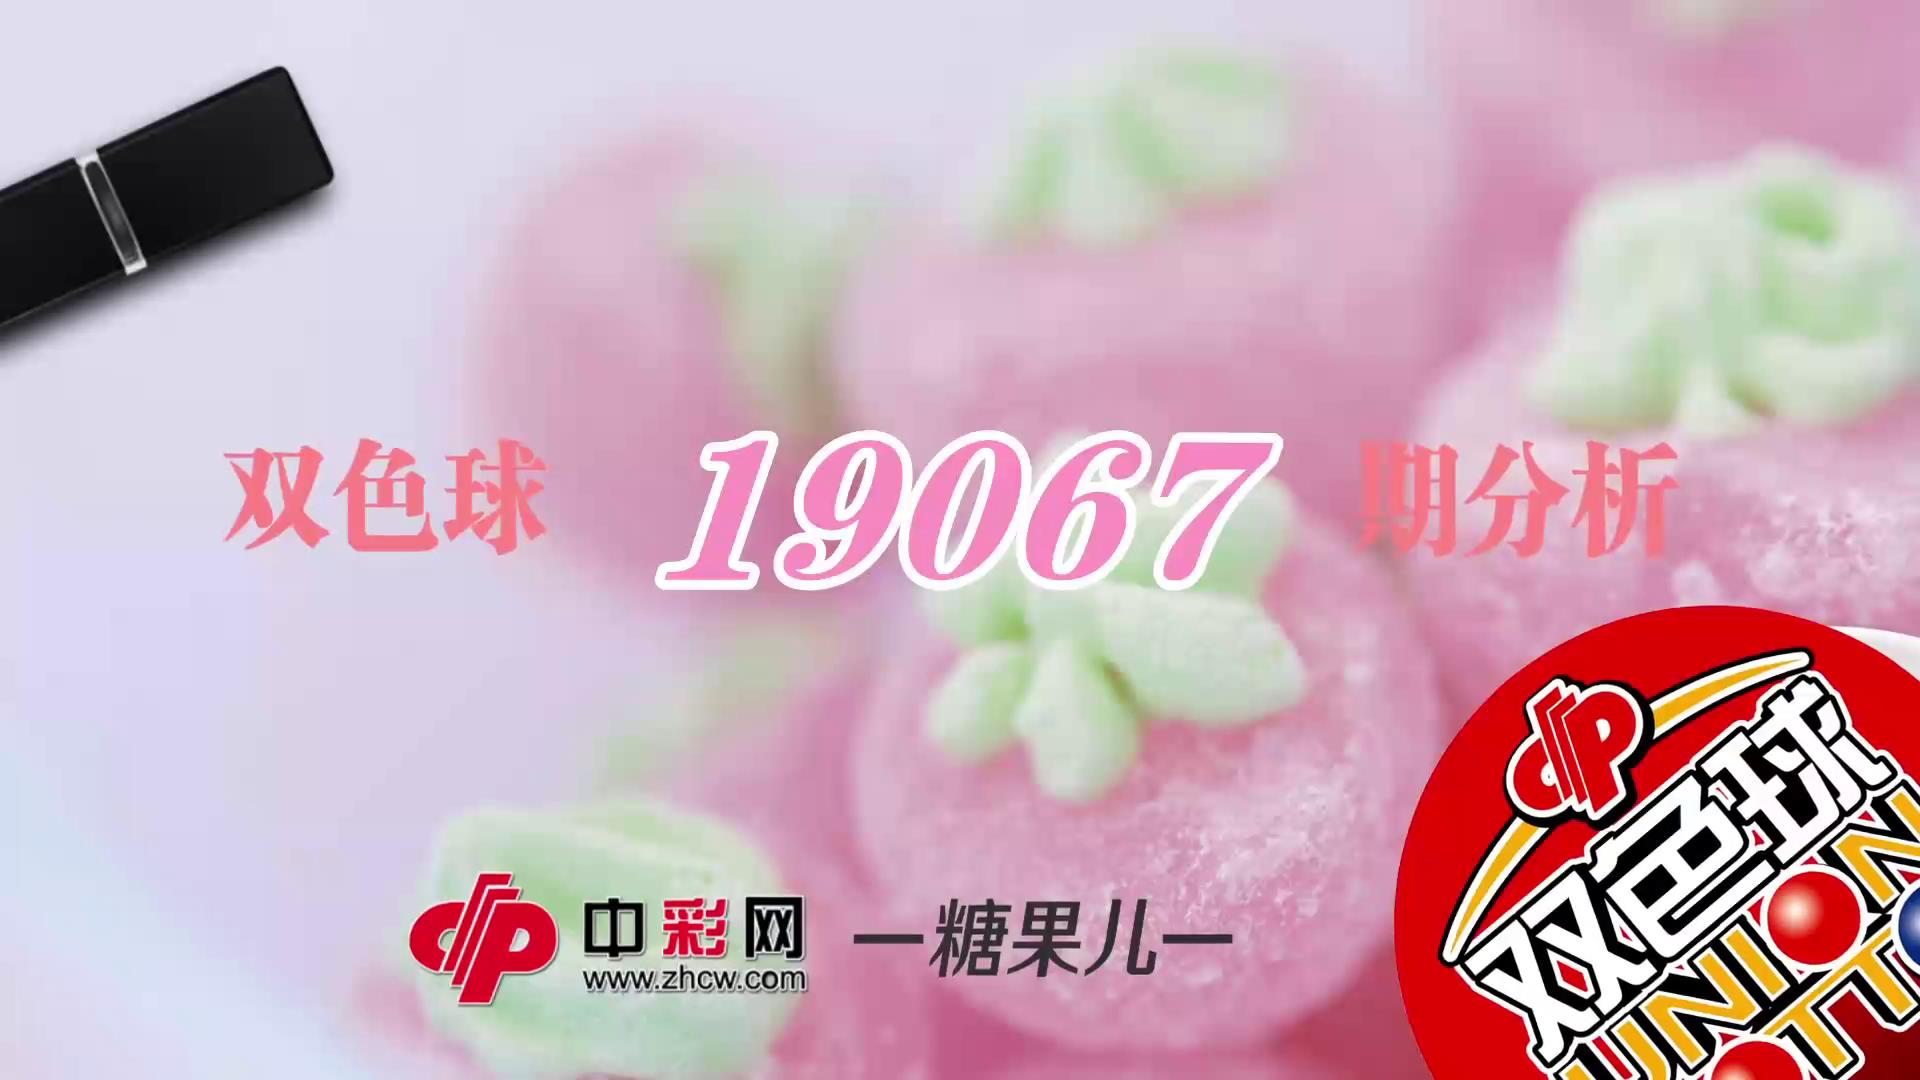 【中彩视频】糖果儿双色球第19067期